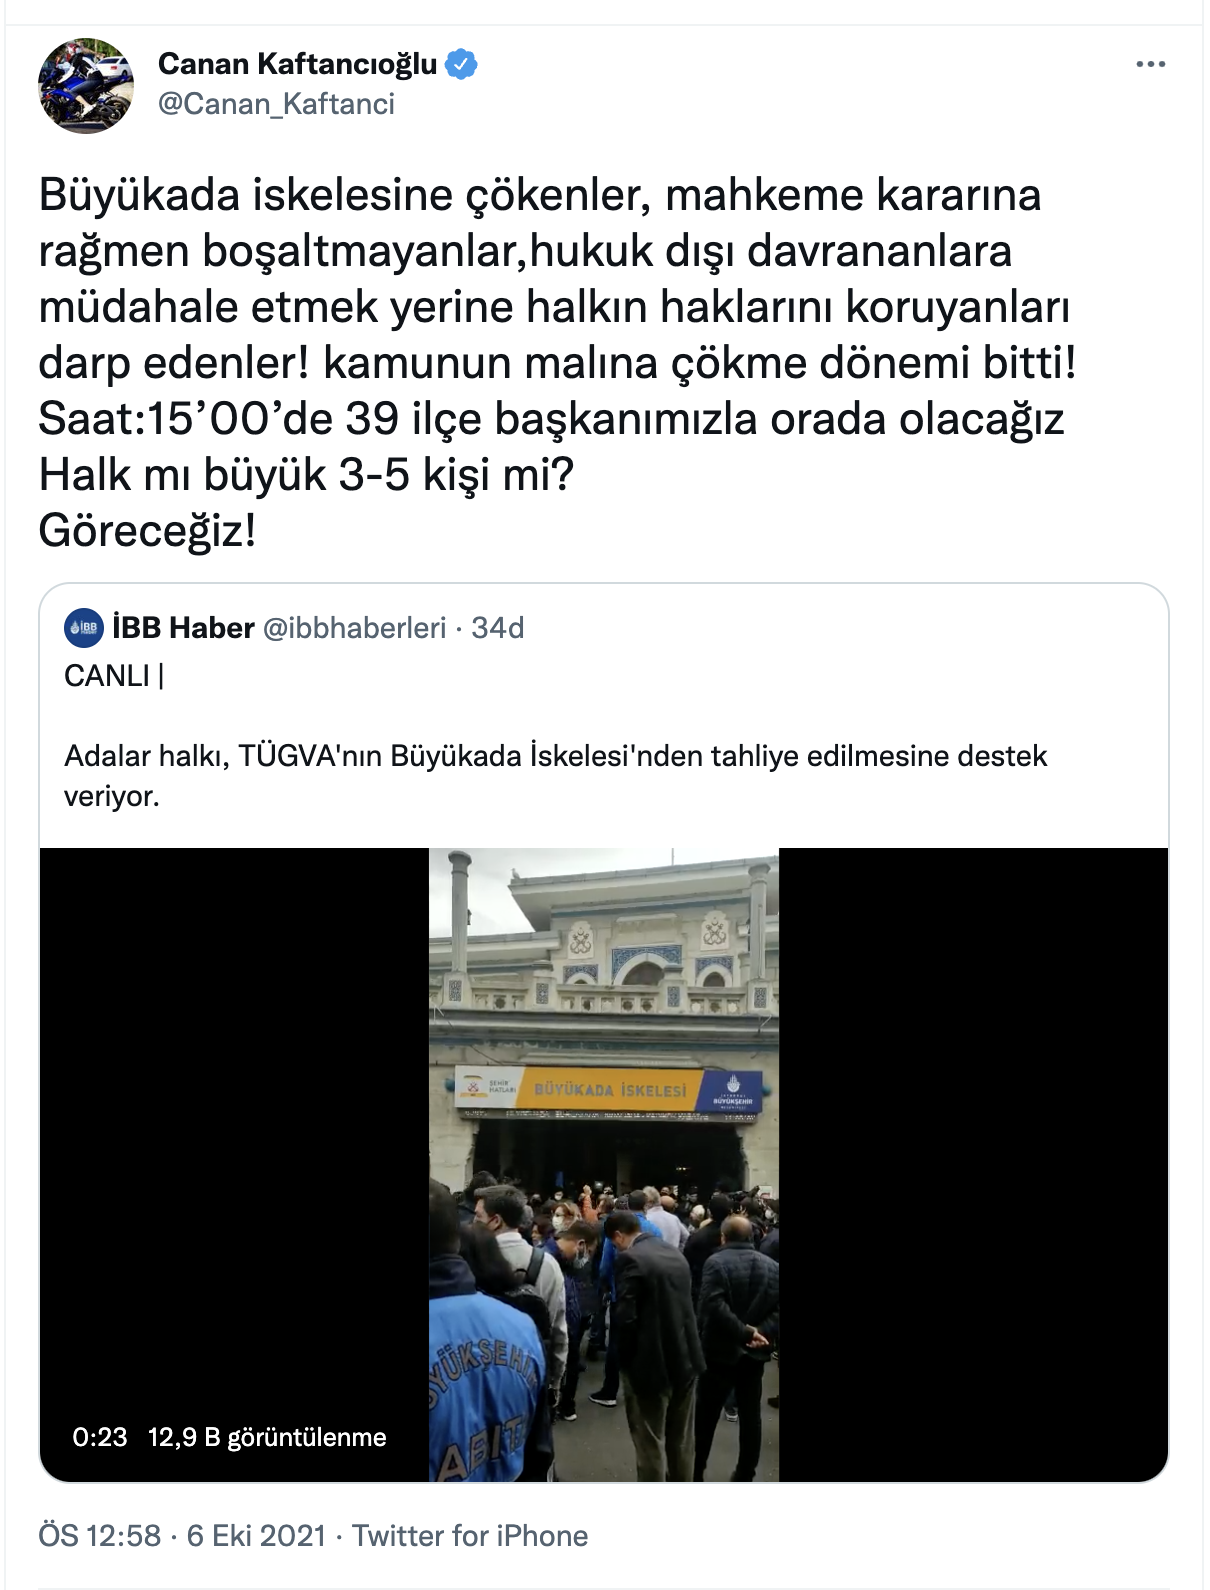 CHP'li Kaftancıoğlu ve İstanbul ilçe başlanları TÜGVA'nın boşaltmadığı Adalar iskelesine gidiyor: Halk mı büyük 3-5 kişi mi, göreceğiz!